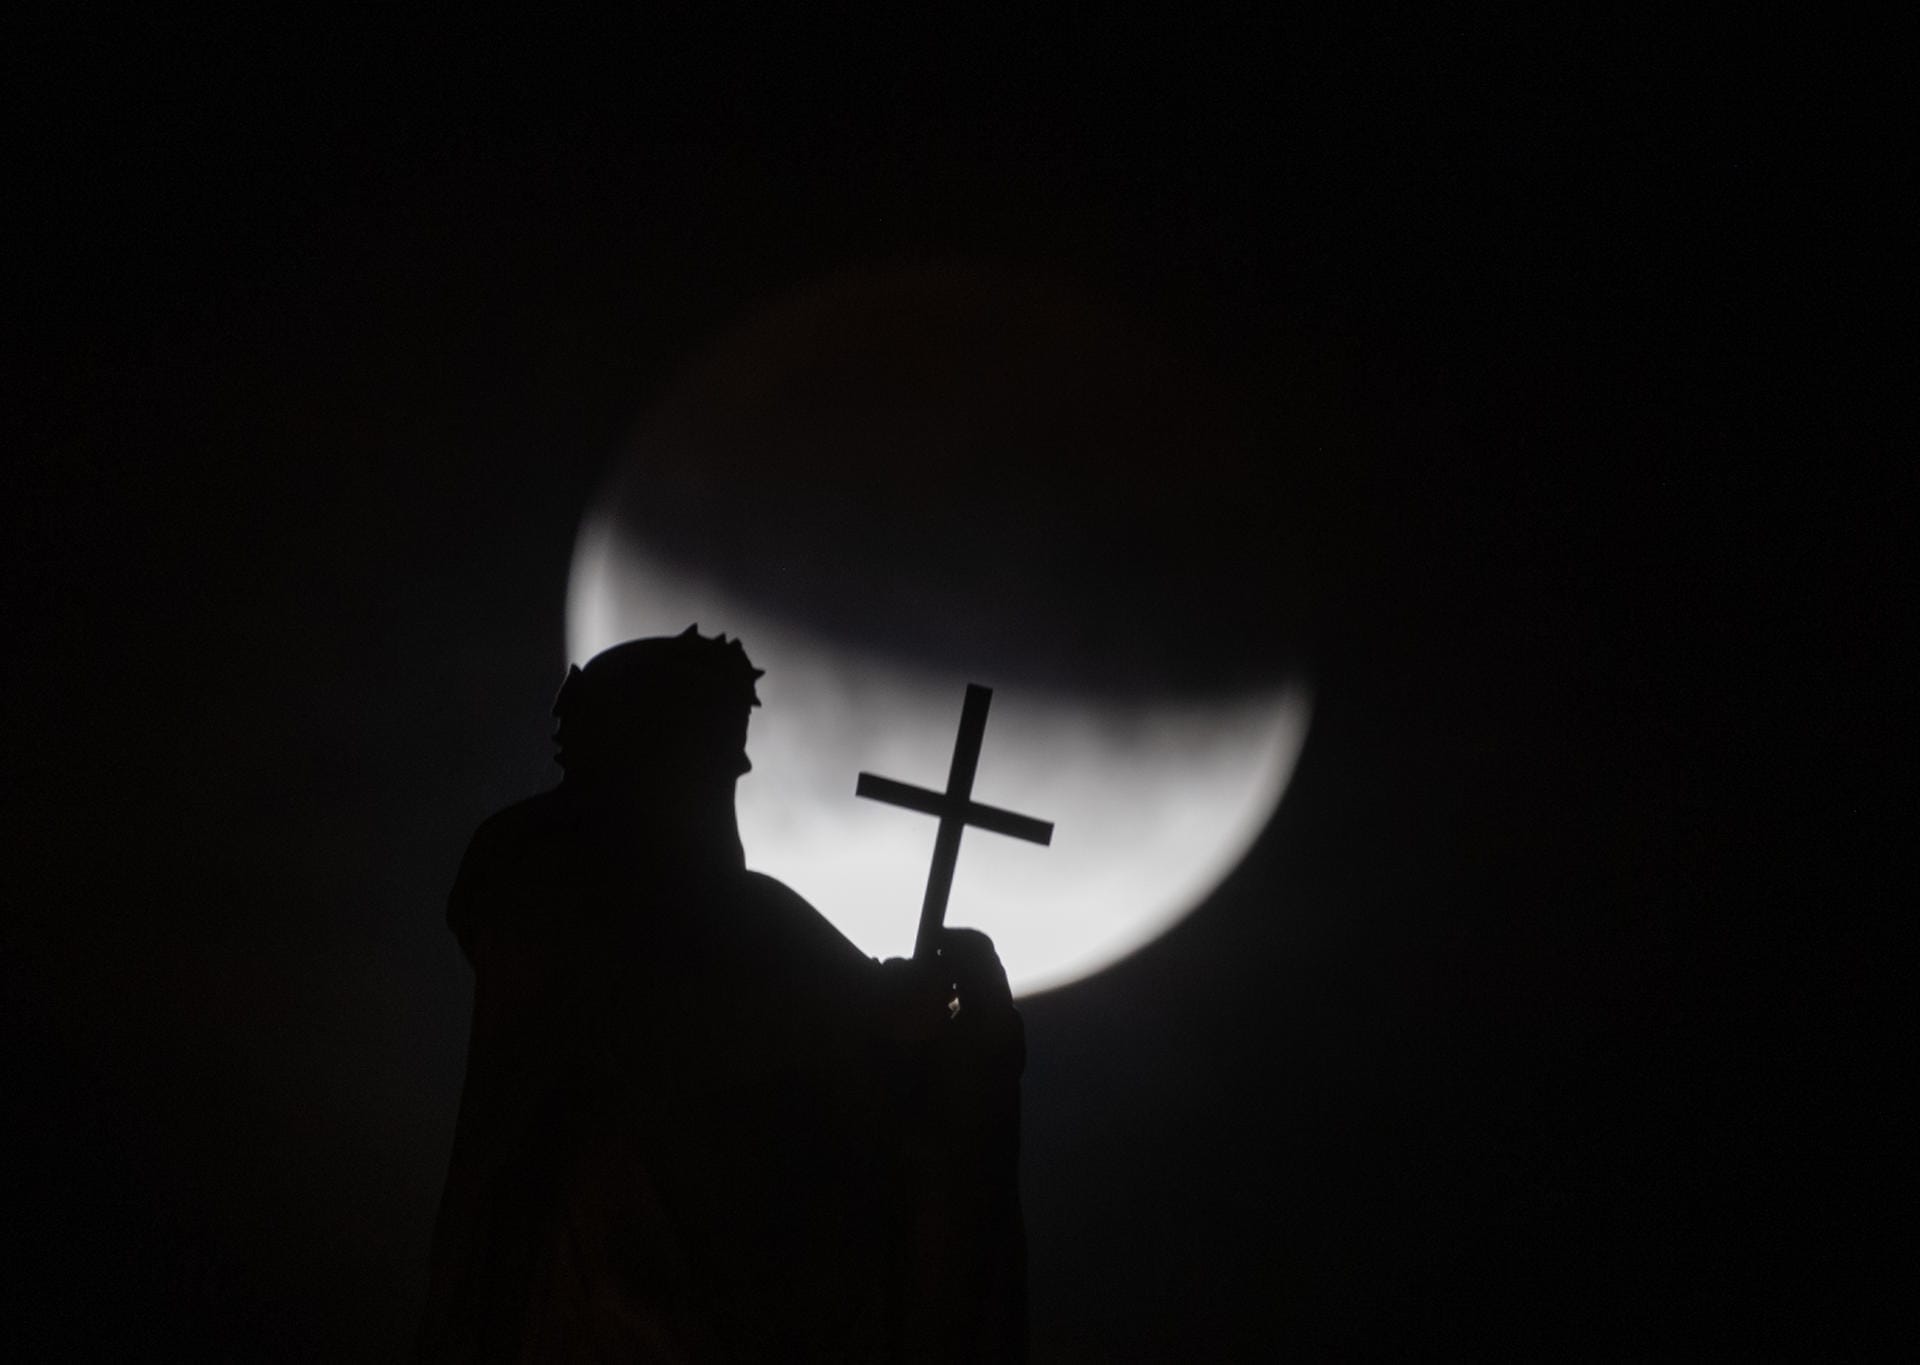 Der Mond ist hinter einer der Mattielli-Statuen auf der Katholischen Hofkirche in Dresden zu sehen: Fast zwei Drittel des Mondes lagen in der Nacht im Schatten.